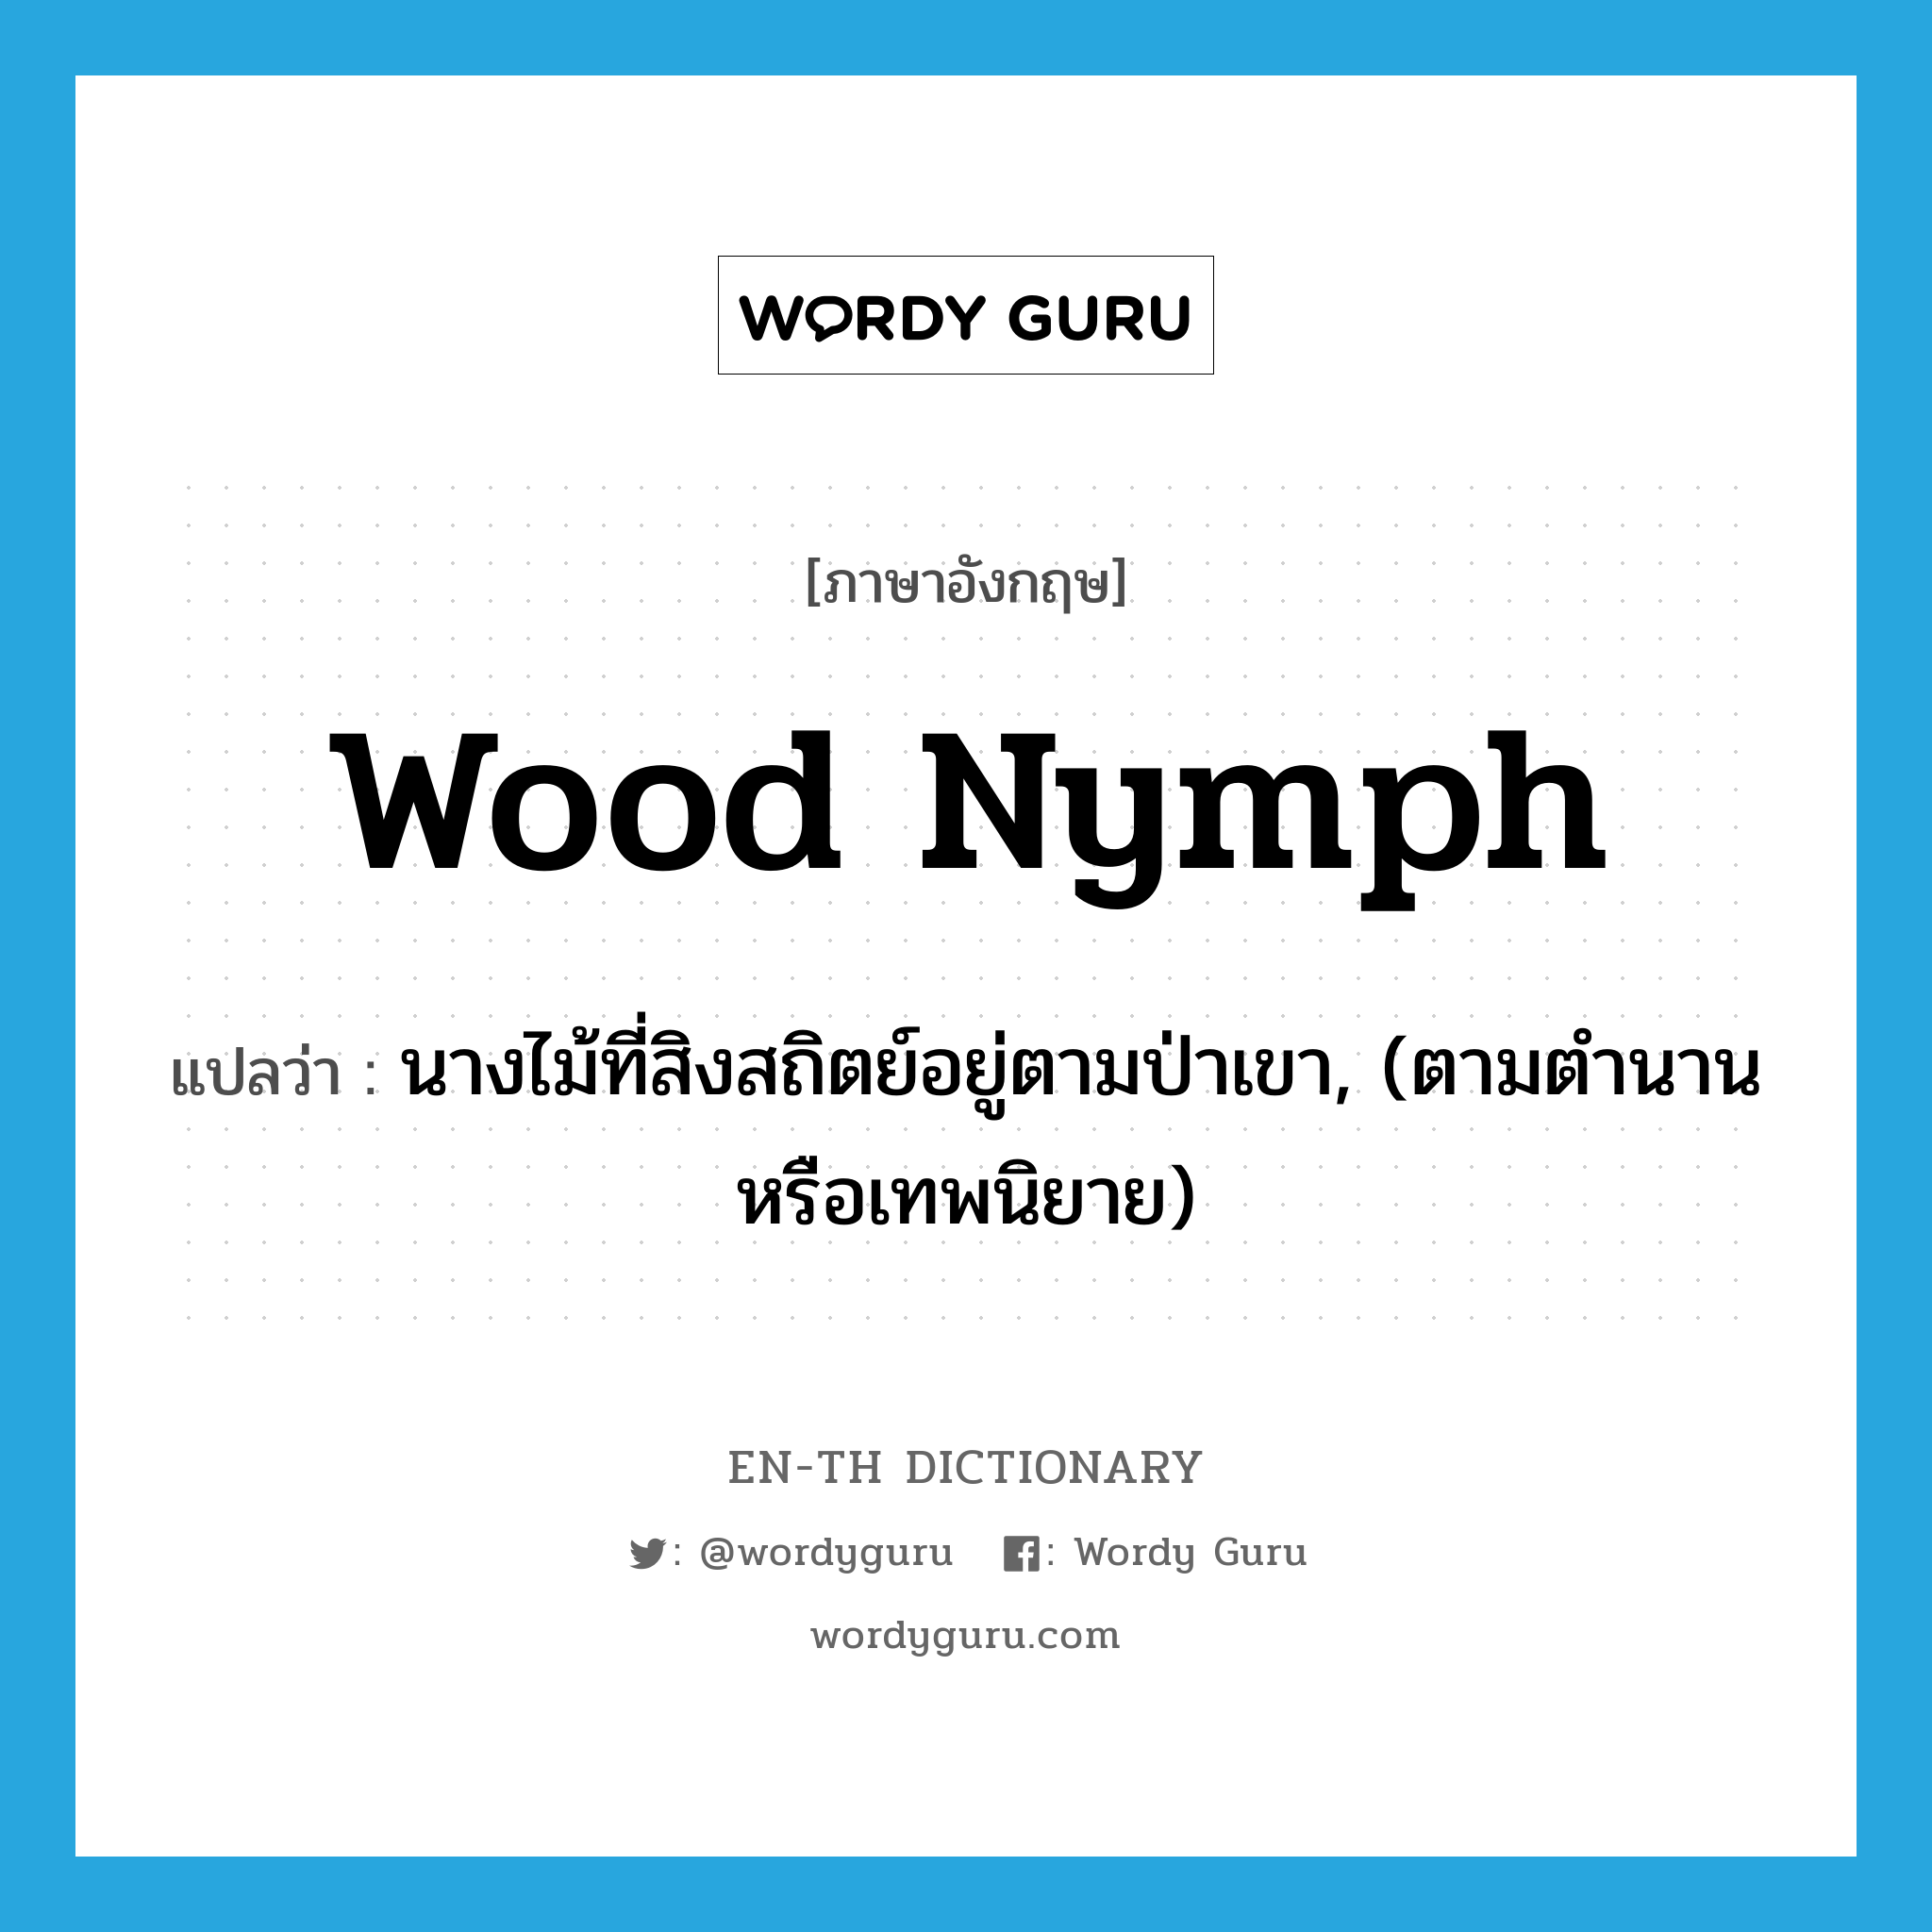 wood nymph แปลว่า?, คำศัพท์ภาษาอังกฤษ wood nymph แปลว่า นางไม้ที่สิงสถิตย์อยู่ตามป่าเขา, (ตามตำนานหรือเทพนิยาย) ประเภท N หมวด N